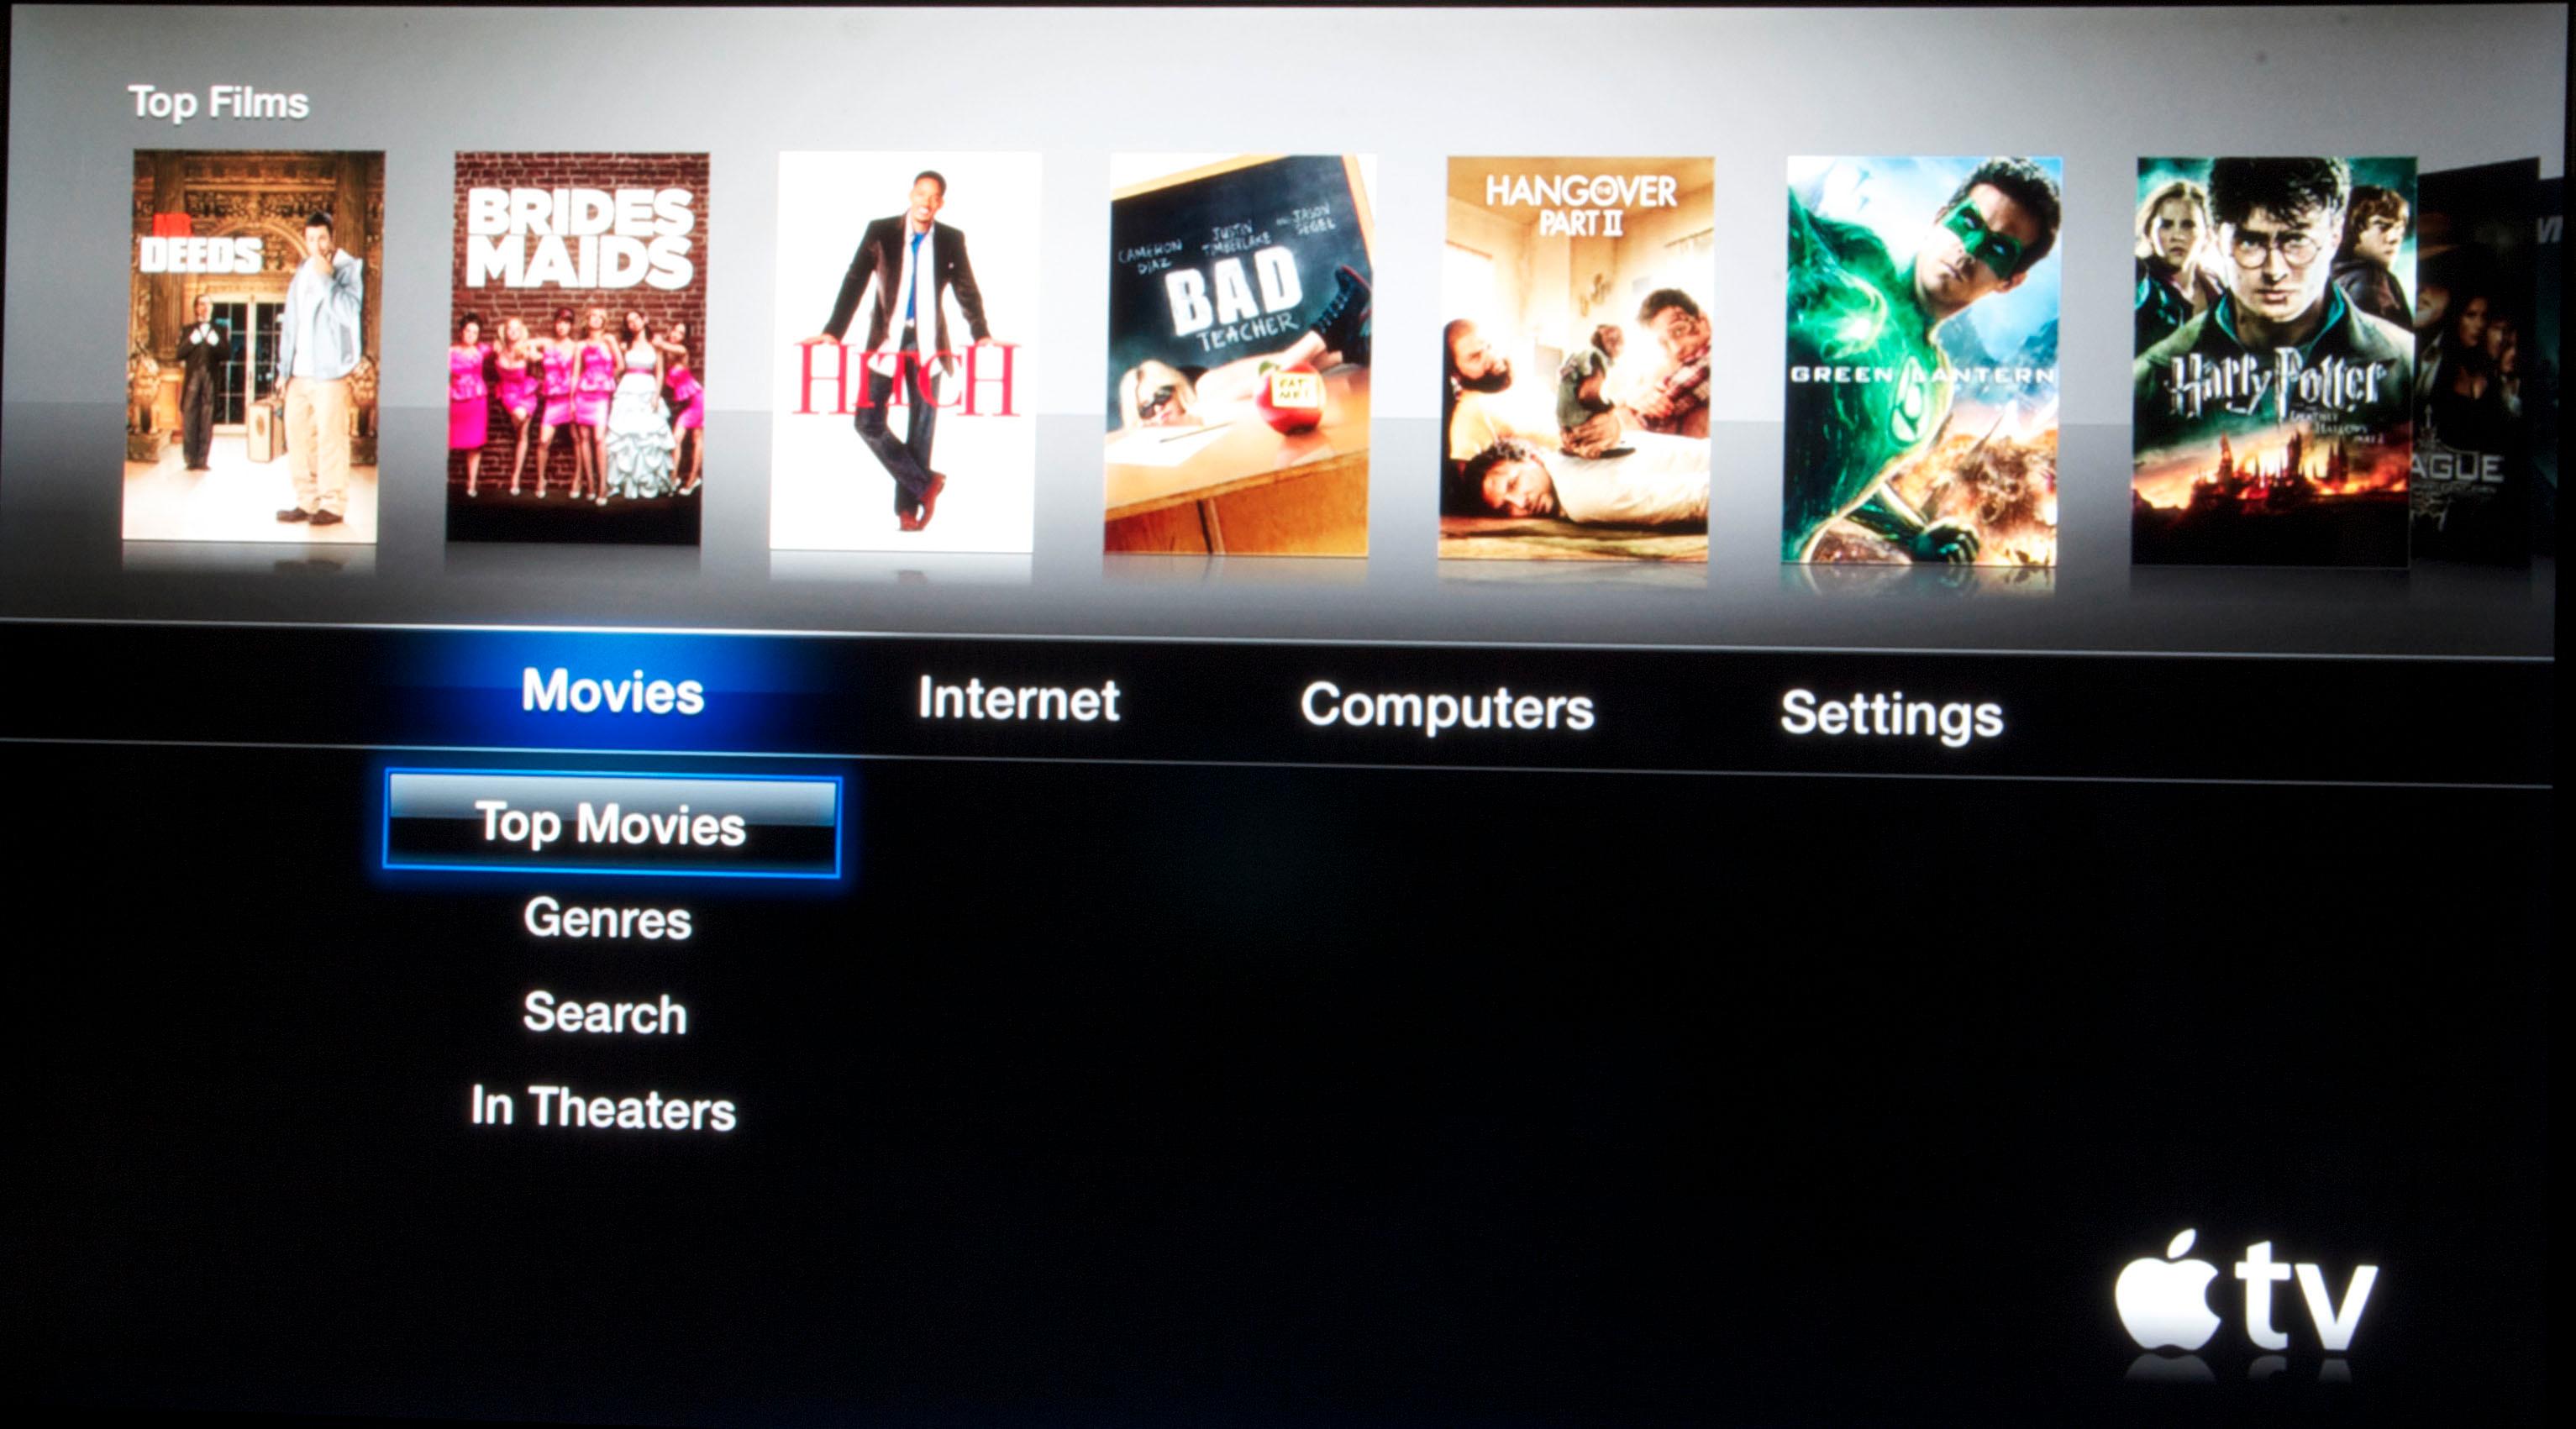 På norske iTunes kan du kun se filmer, mens TV-seriene er forbeholdt det amerikanske markedet.